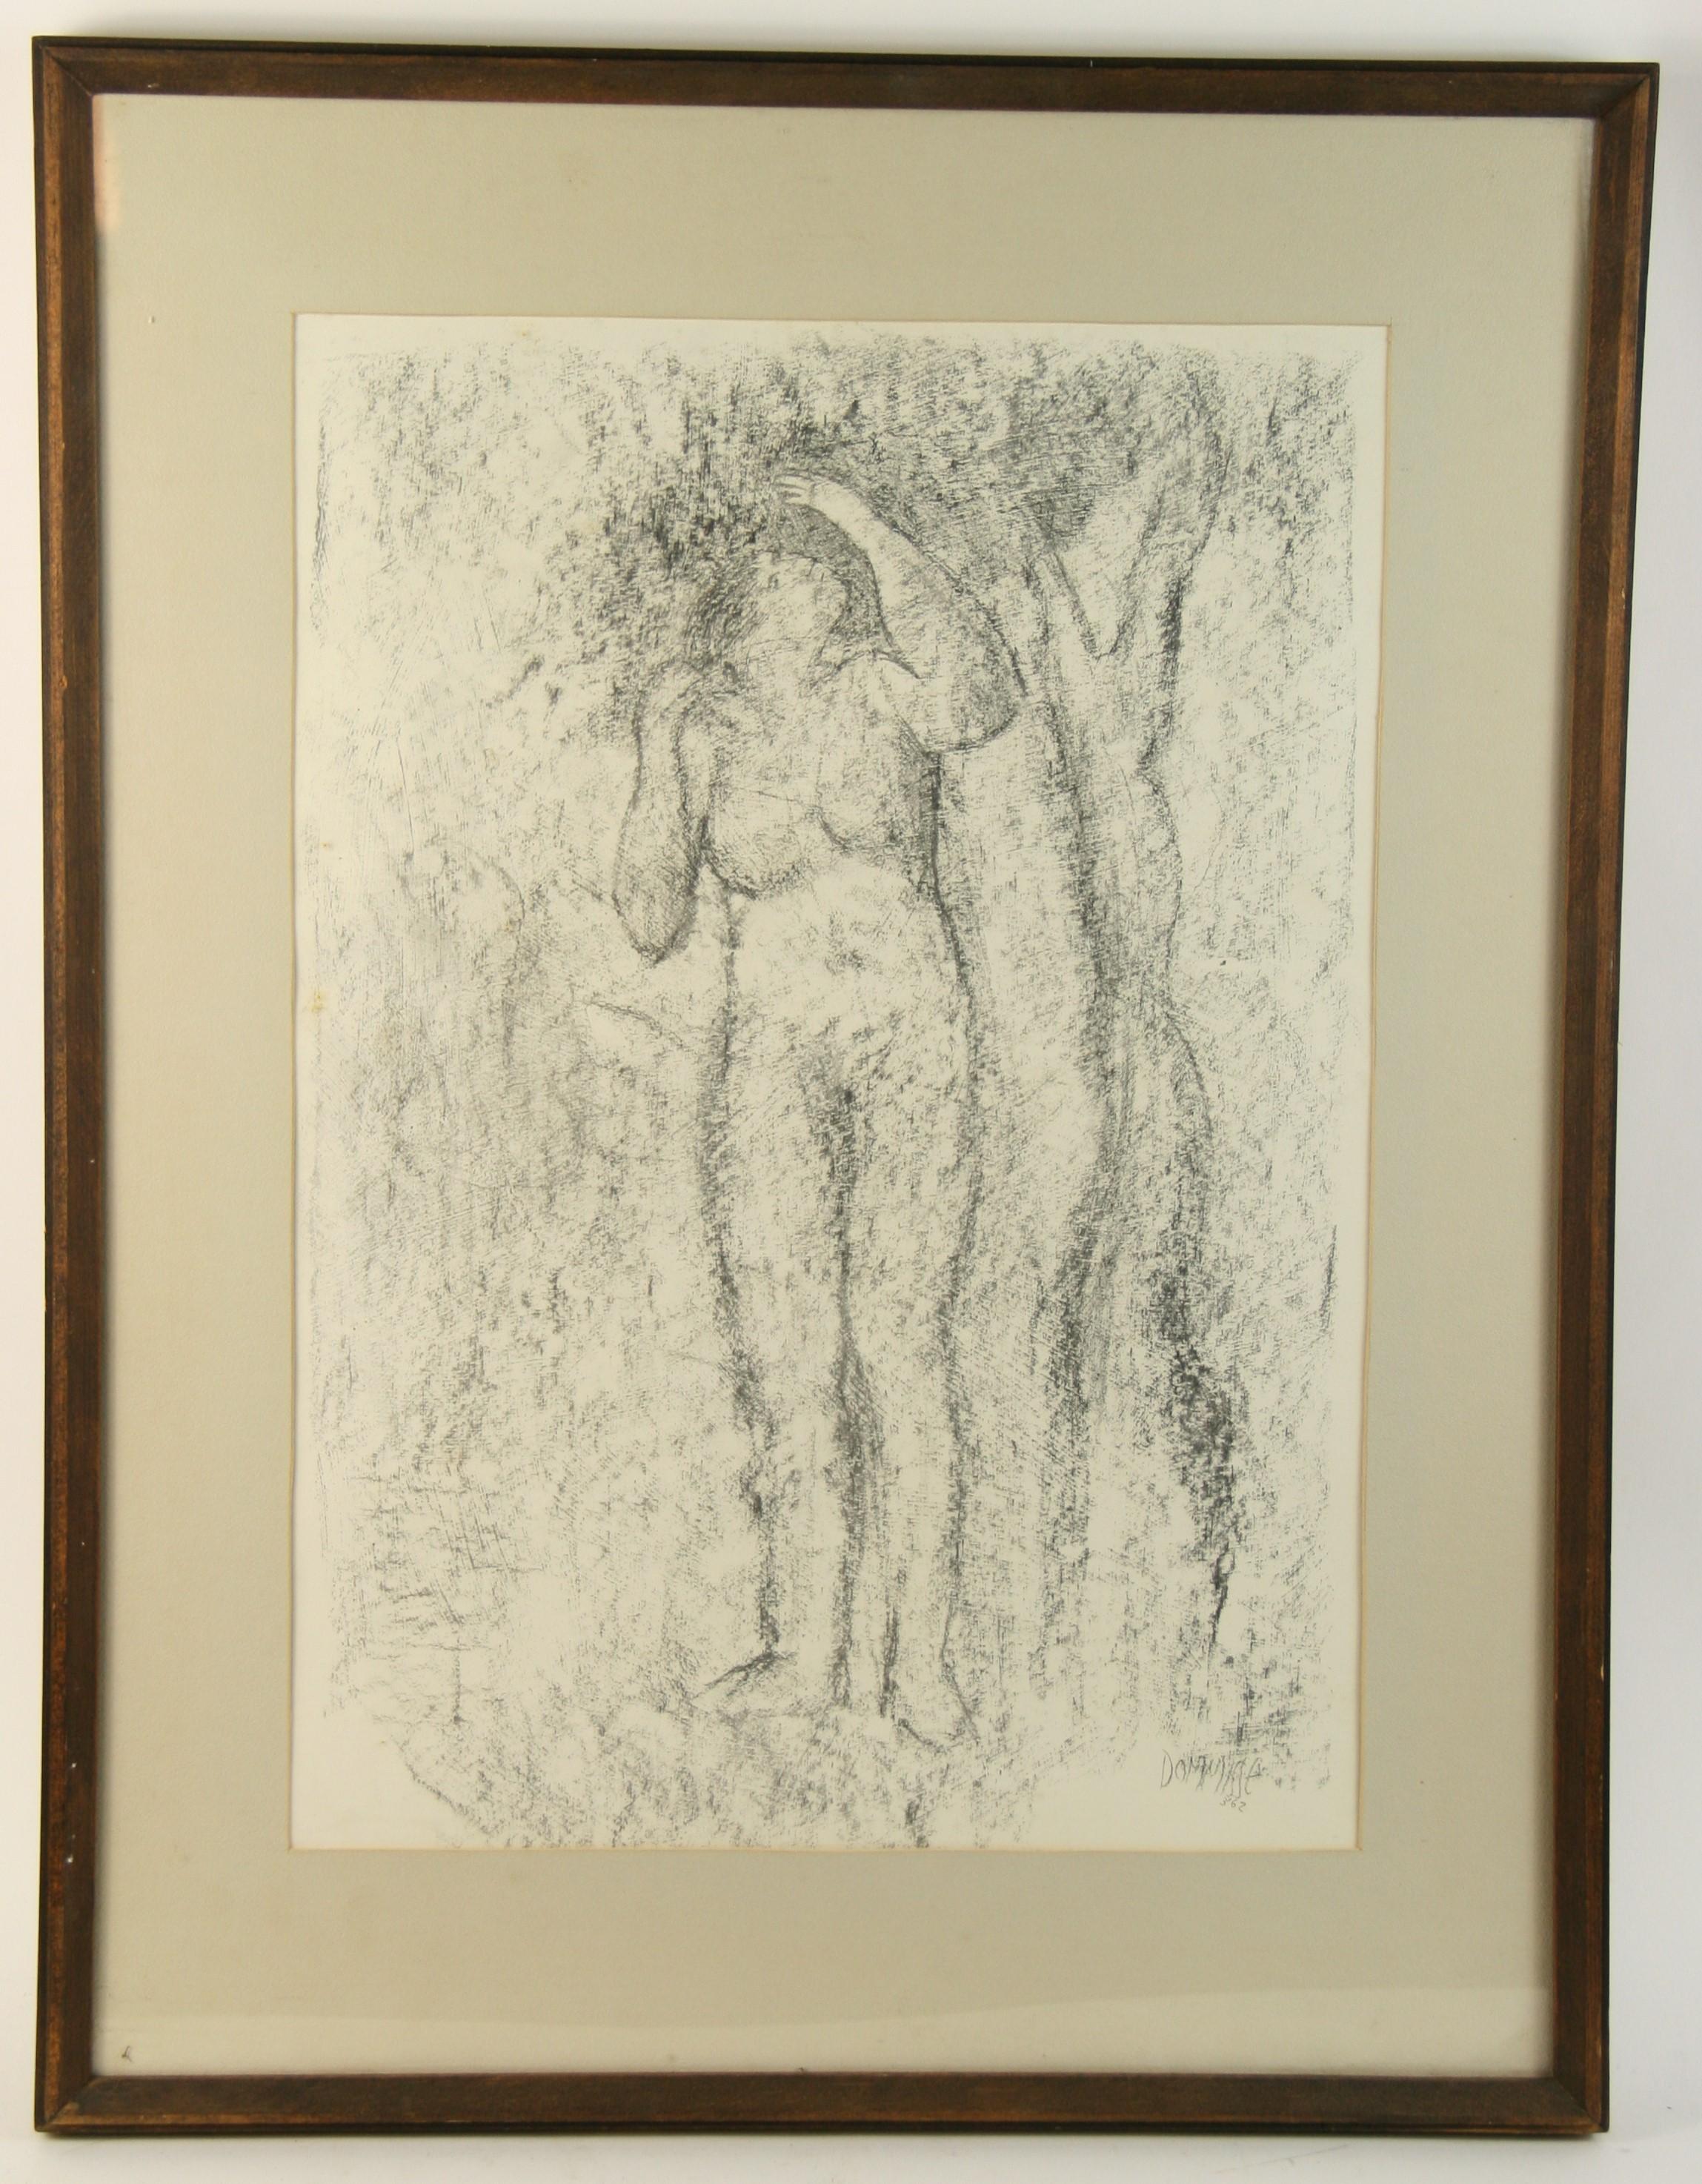 3761  Zeichnung einer nackten Frau unter einem Baum
In einem massiven Eichenholzrahmen
Bildgröße 15x22
Gezeichnet Dommisse 62 